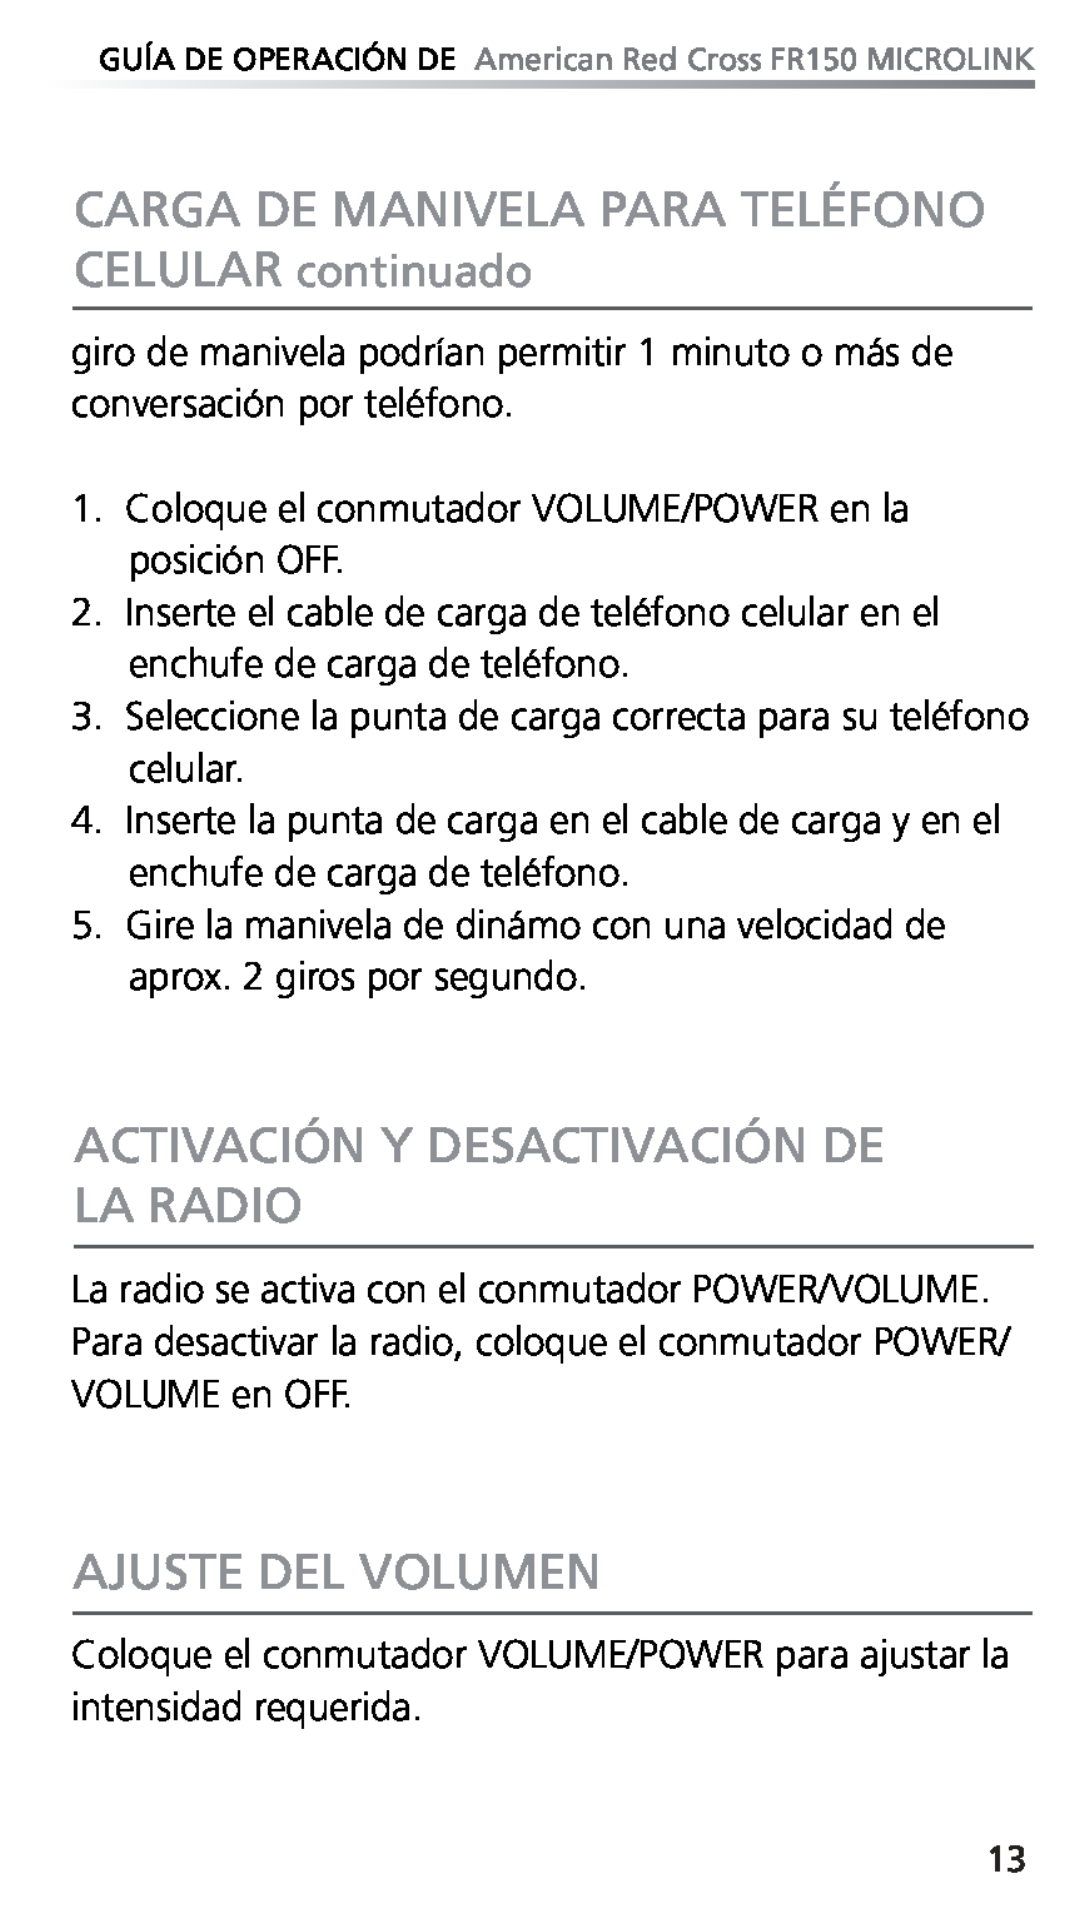 Eton FR150 owner manual Activación Y Desactivación De La Radio, Ajuste Del Volumen 